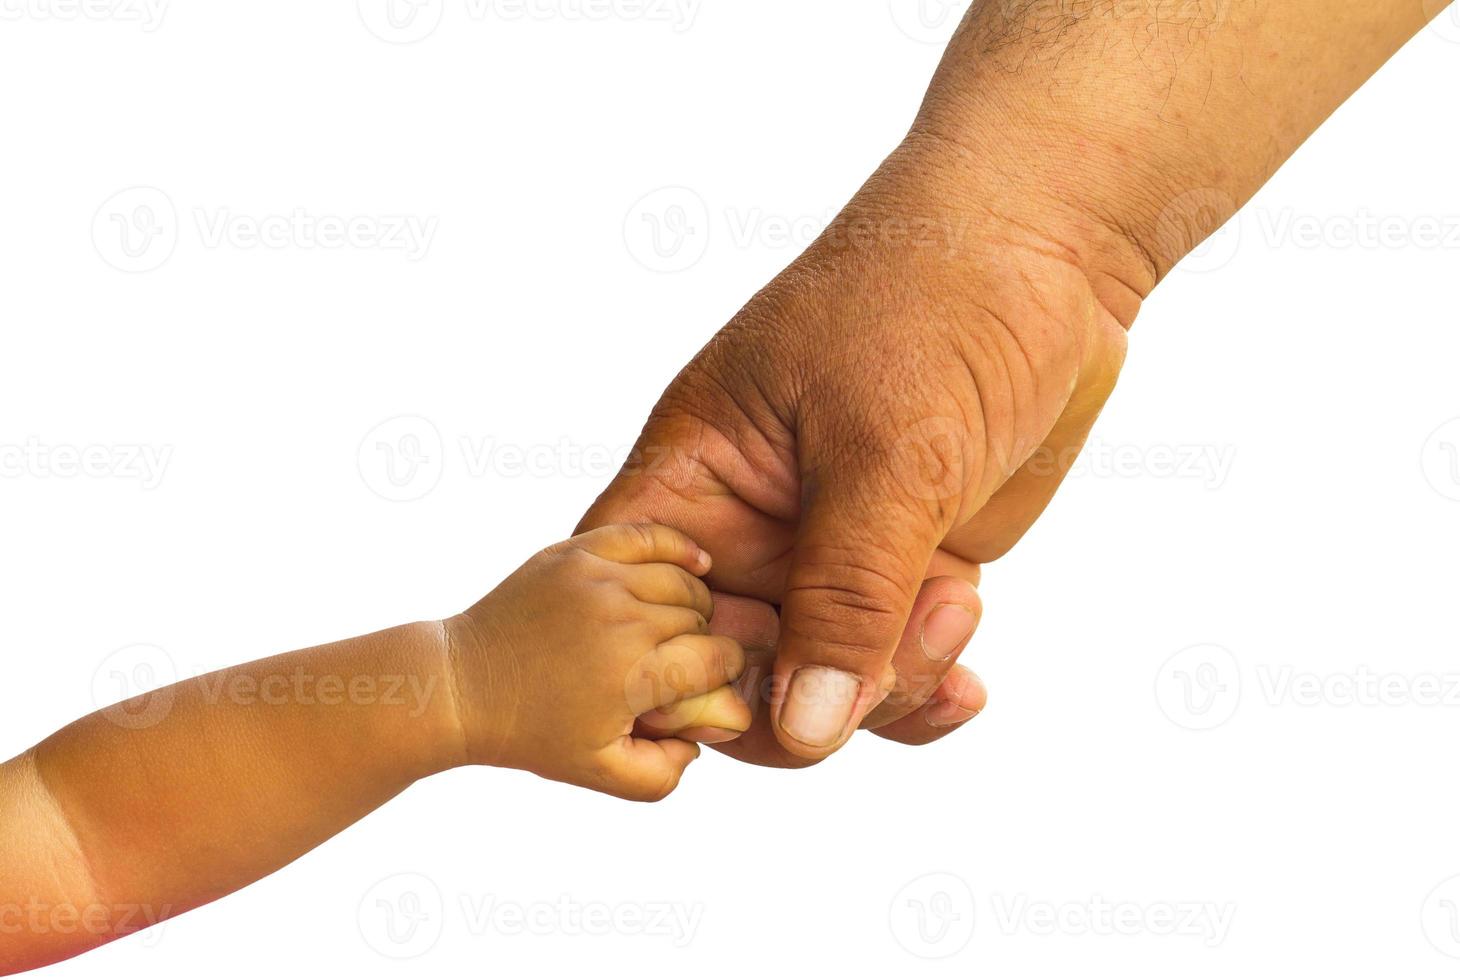 niños sosteniendo el dedo de un adulto. foto